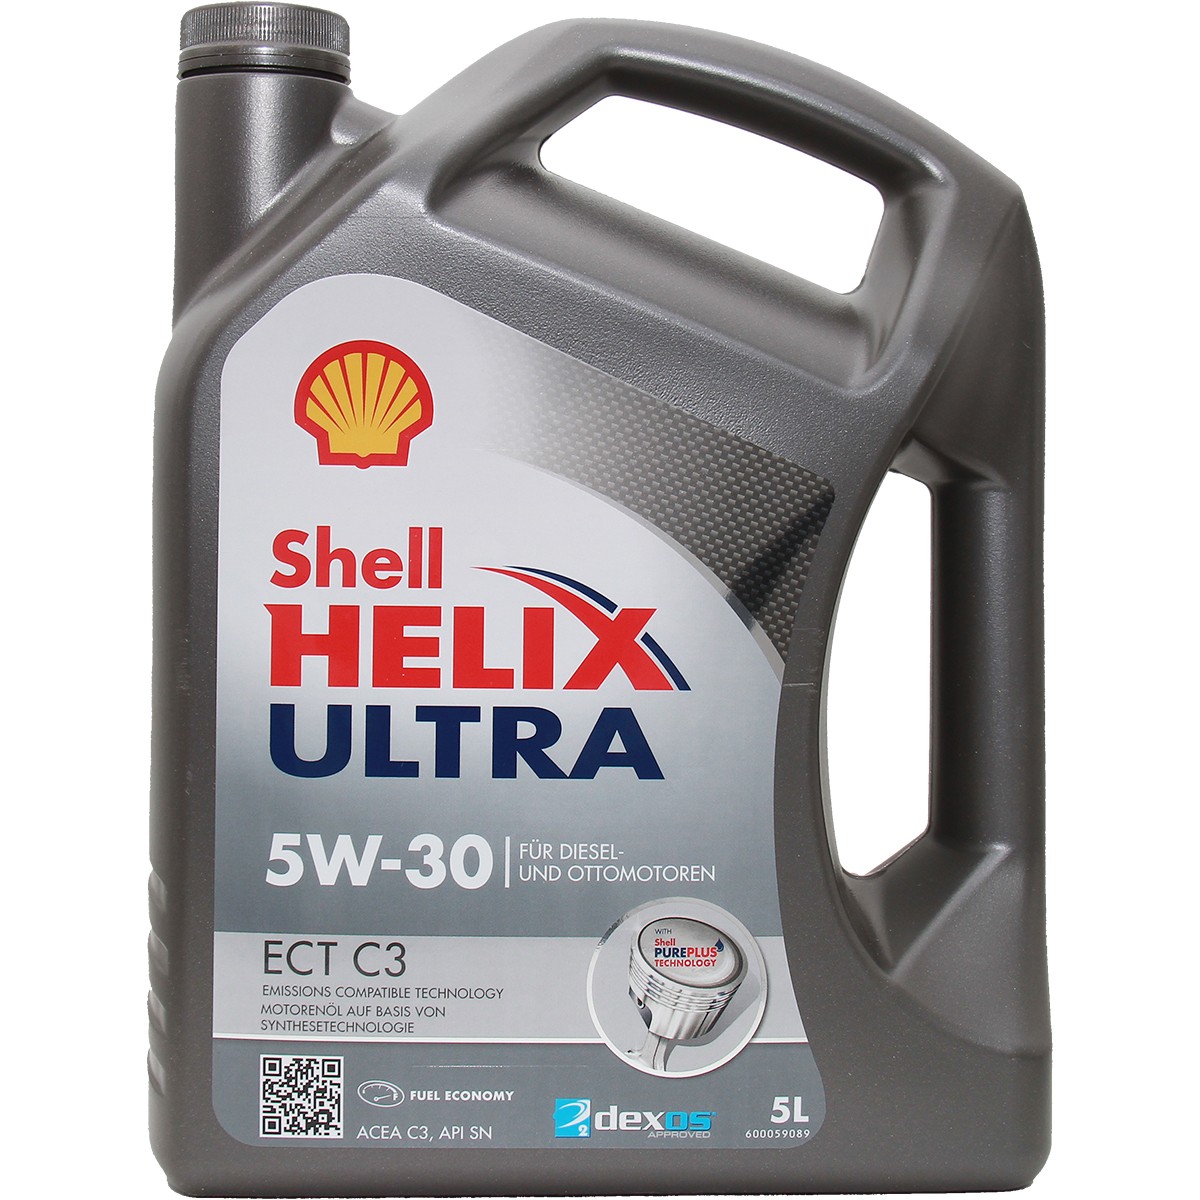 Buy Car oil SHELL diesel 550042845 Helix, Ultra ECT C3 5W-30, 5l